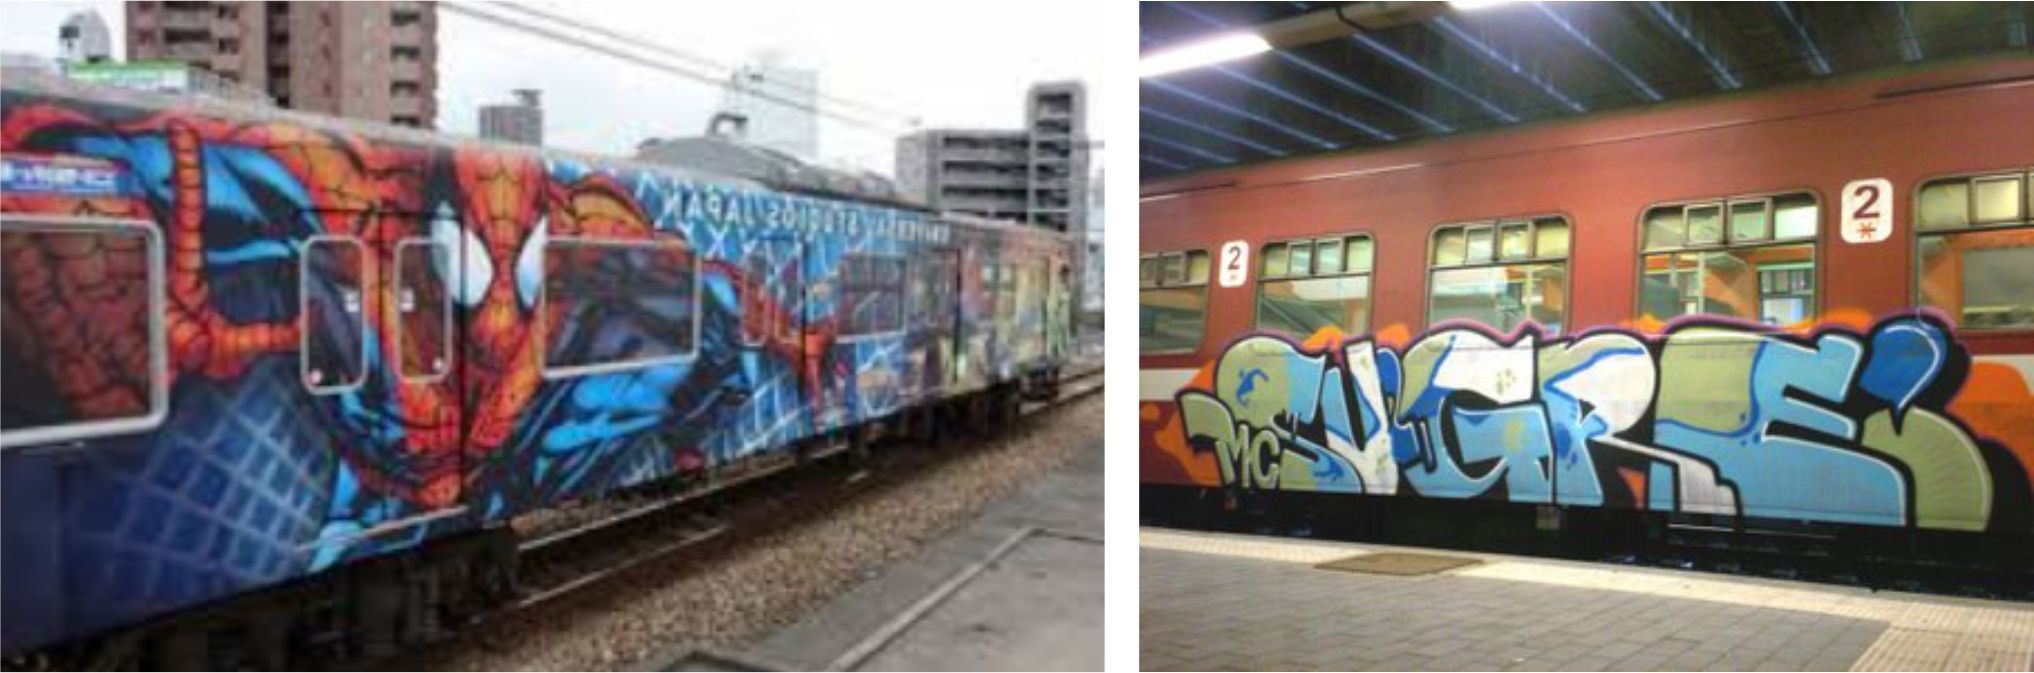 beschilderde trein